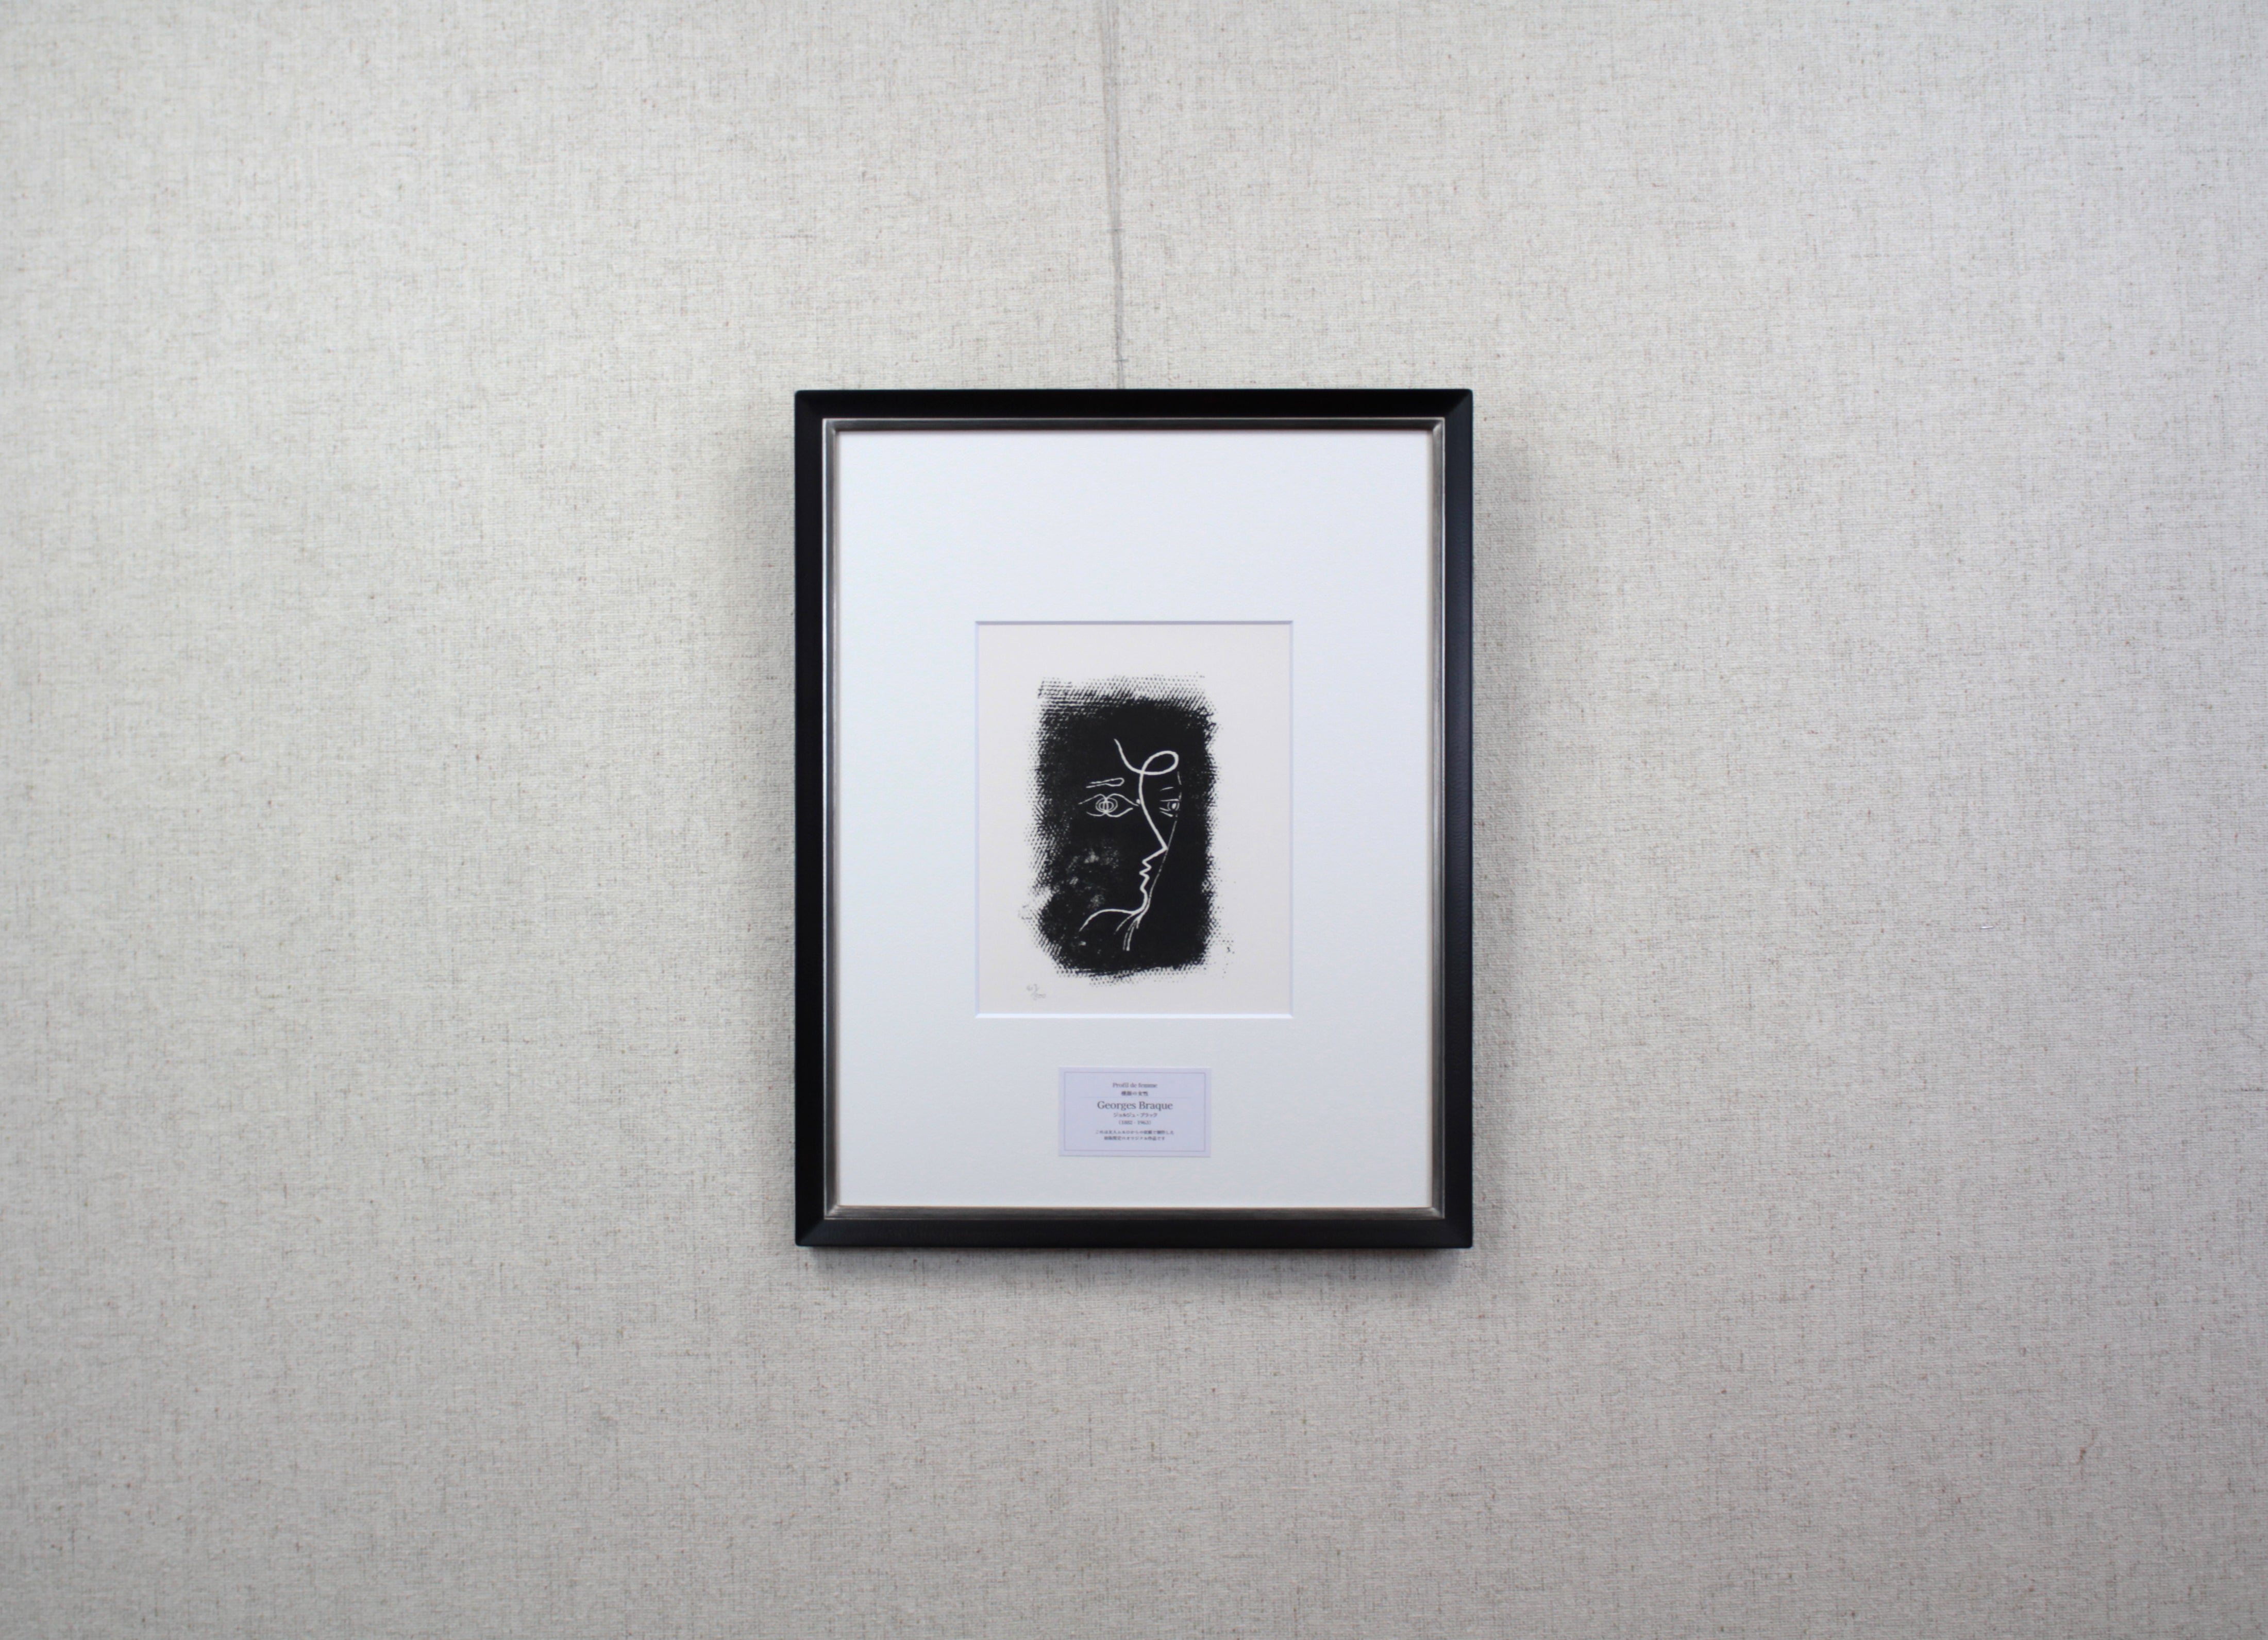 ジョルジュ・ブラック 『横顔の女性』 リトグラフ - 北海道画廊